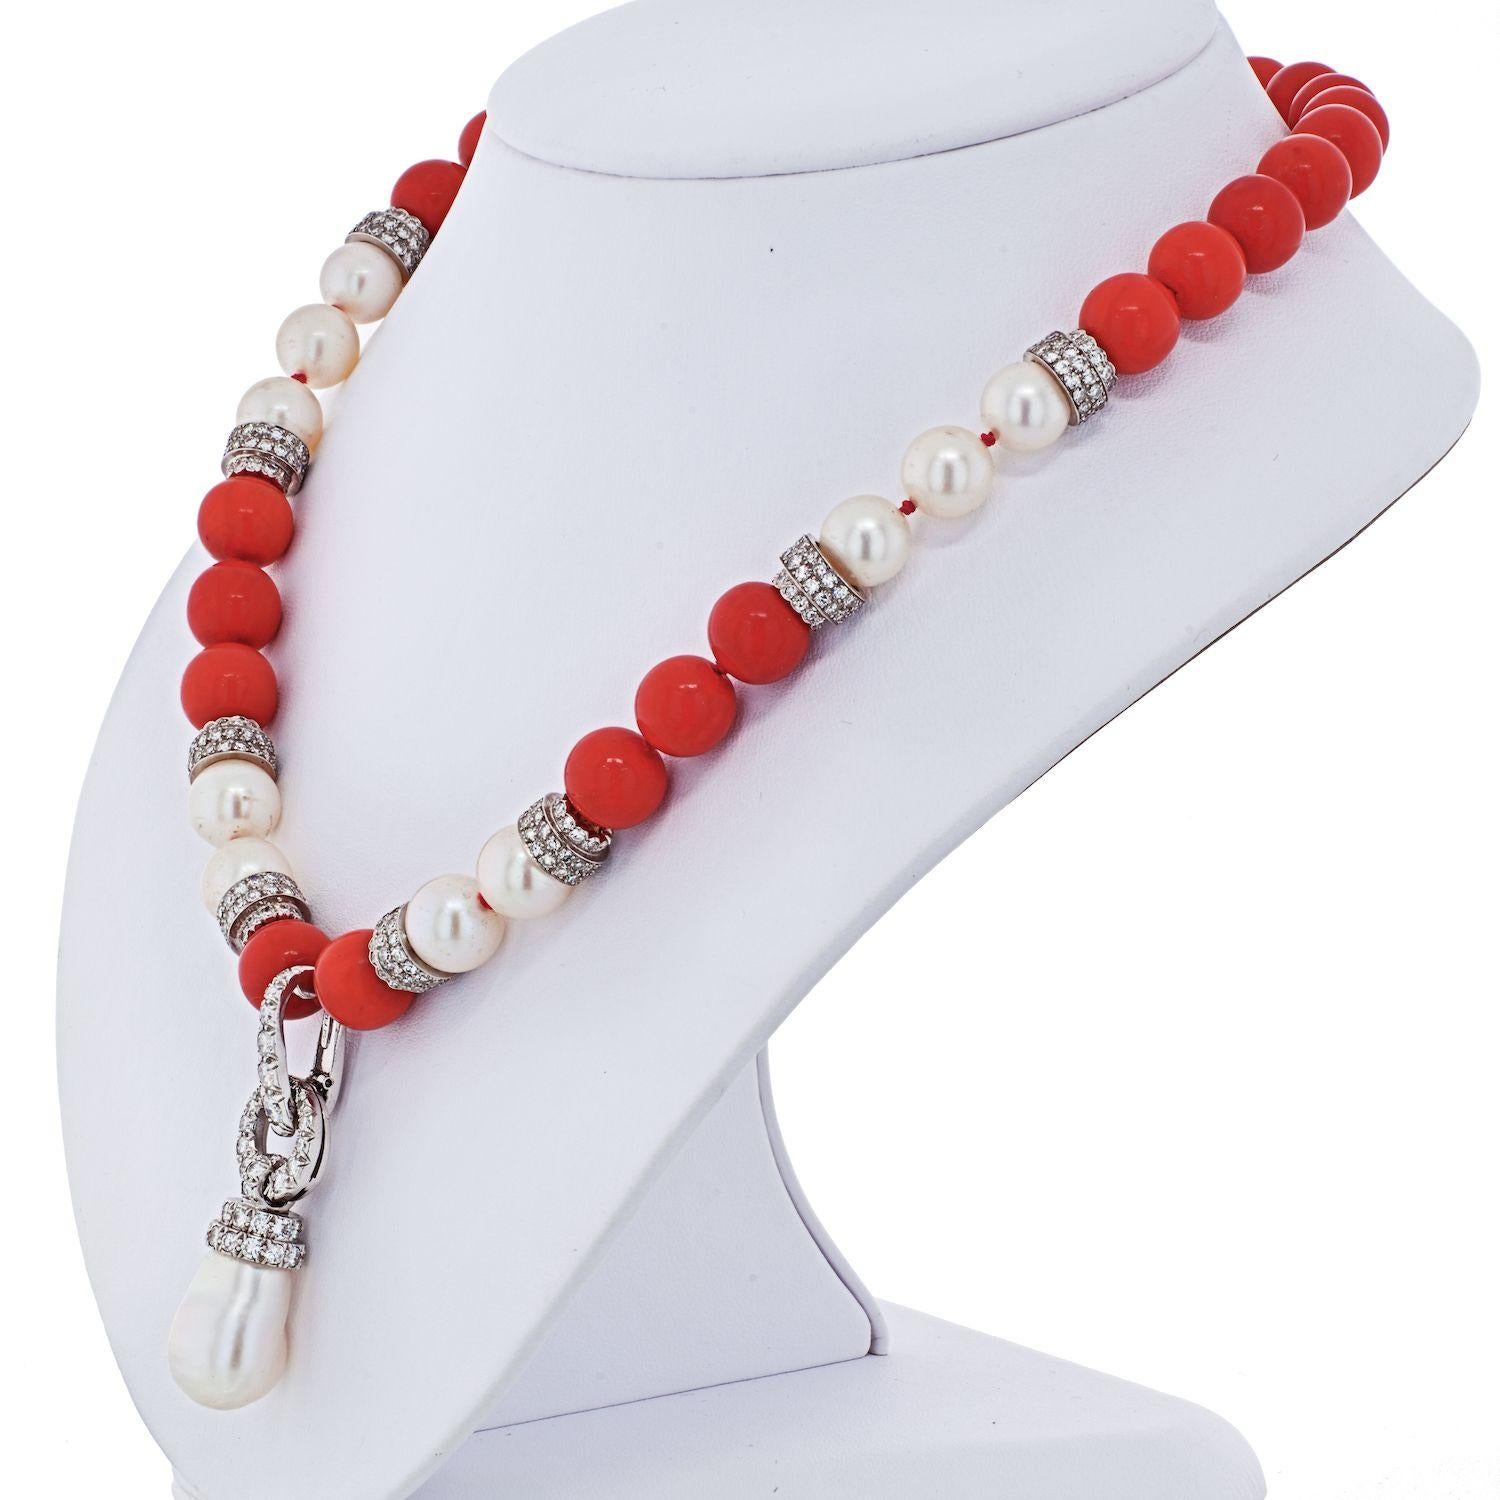 Erleben Sie die außergewöhnliche Anziehungskraft der David Webb Coral and Pearl Diamond Bead Necklace, ein einzigartiges und fesselndes Stück, das Korallen, Perlen und Diamanten in einem exquisiten Design vereint.

**Schlüsselmerkmale:**

1.